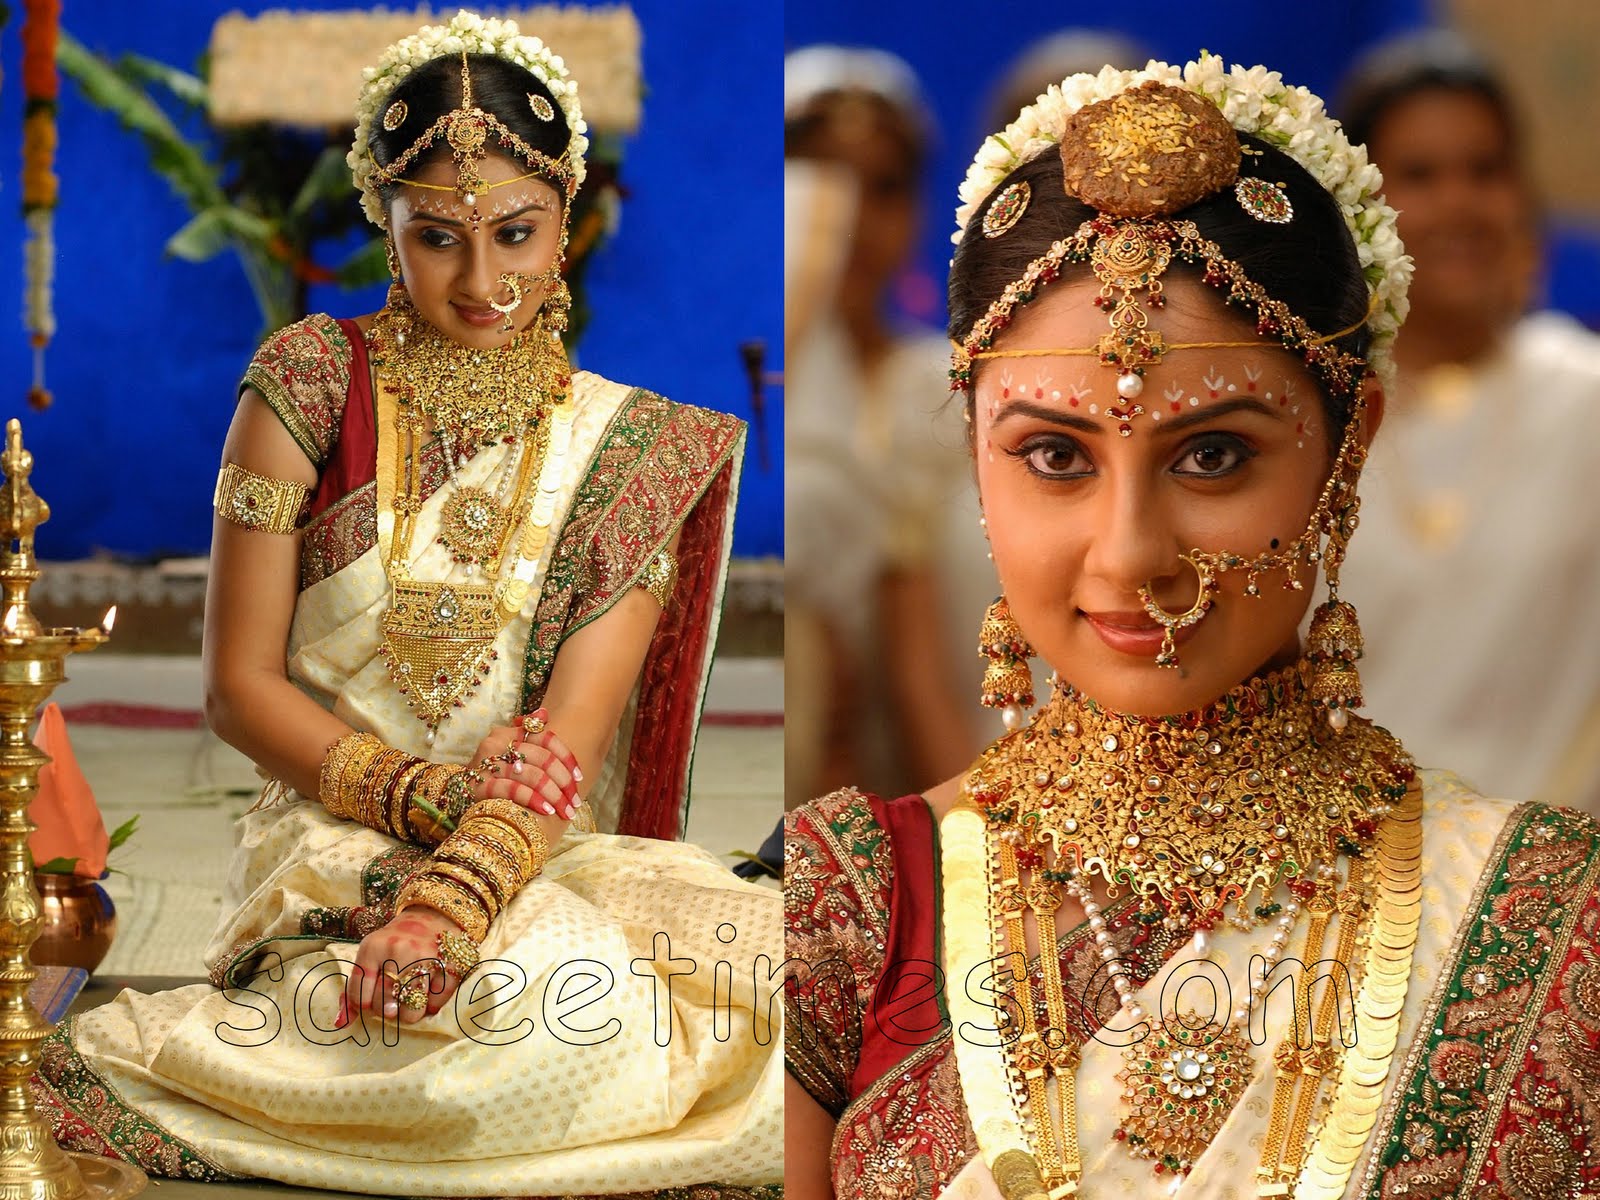 http://4.bp.blogspot.com/_58_qEOwiSDY/S9DIF_N-16I/AAAAAAAACsw/97umBn_urHs/s1600/Bhanu-Shree-Mehra-Indian-Wedding-Saree.jpg